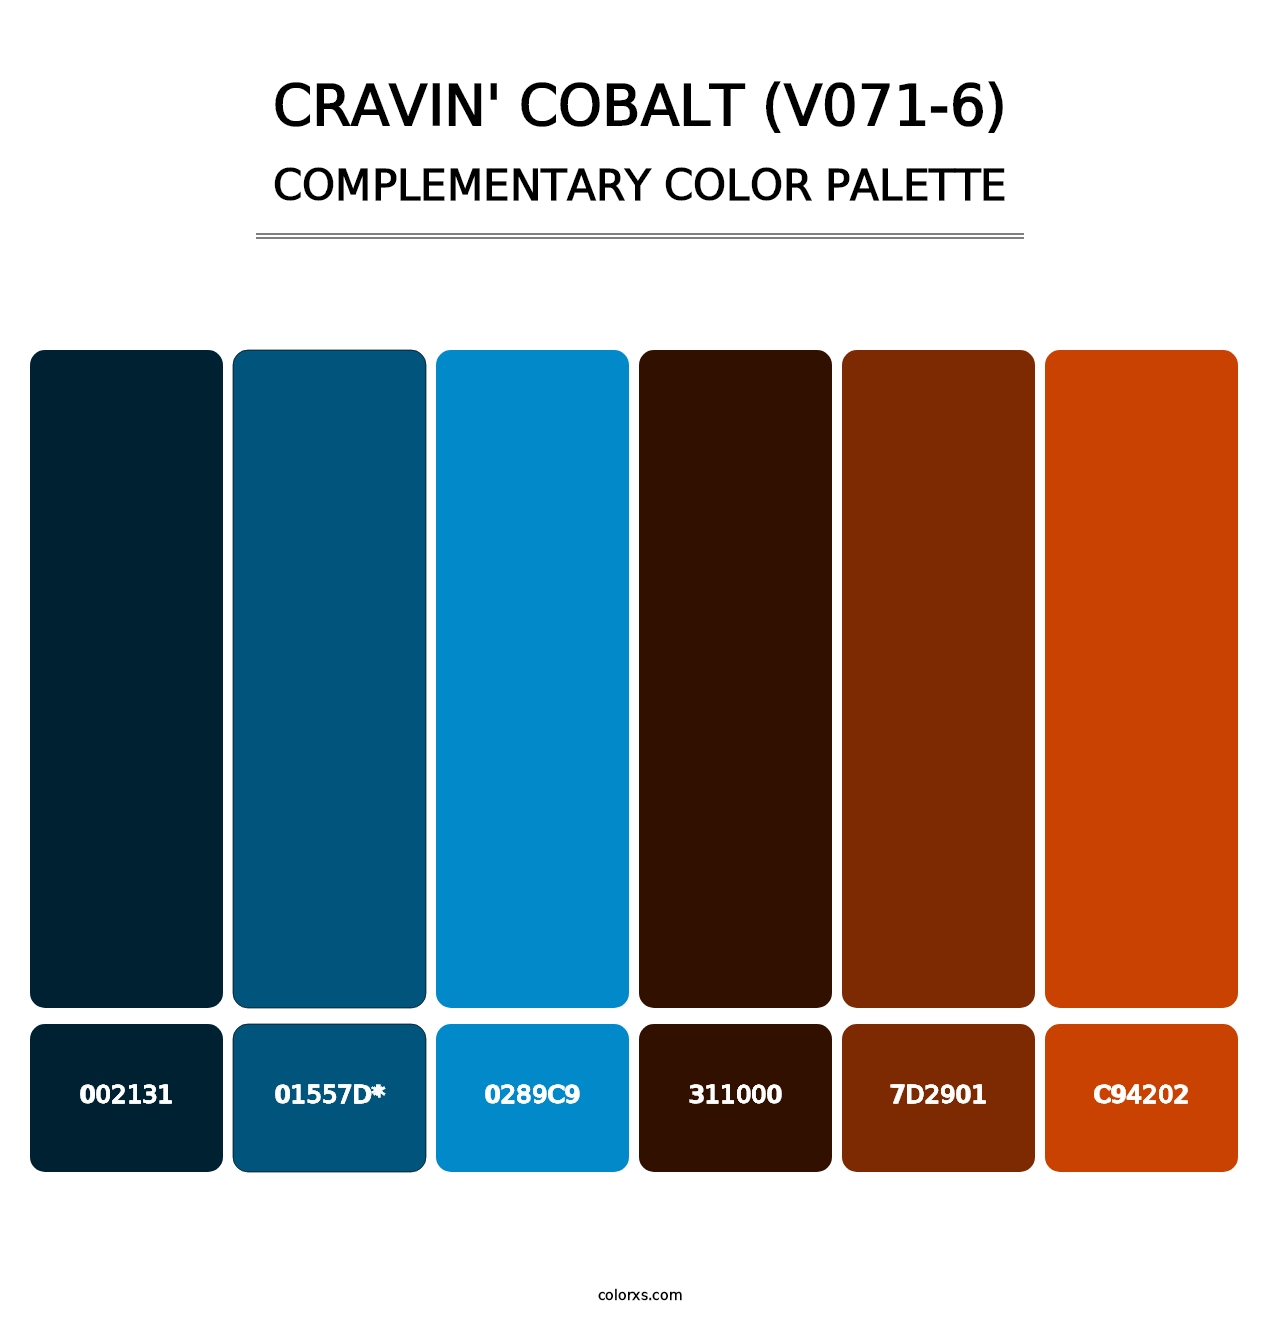 Cravin' Cobalt (V071-6) - Complementary Color Palette